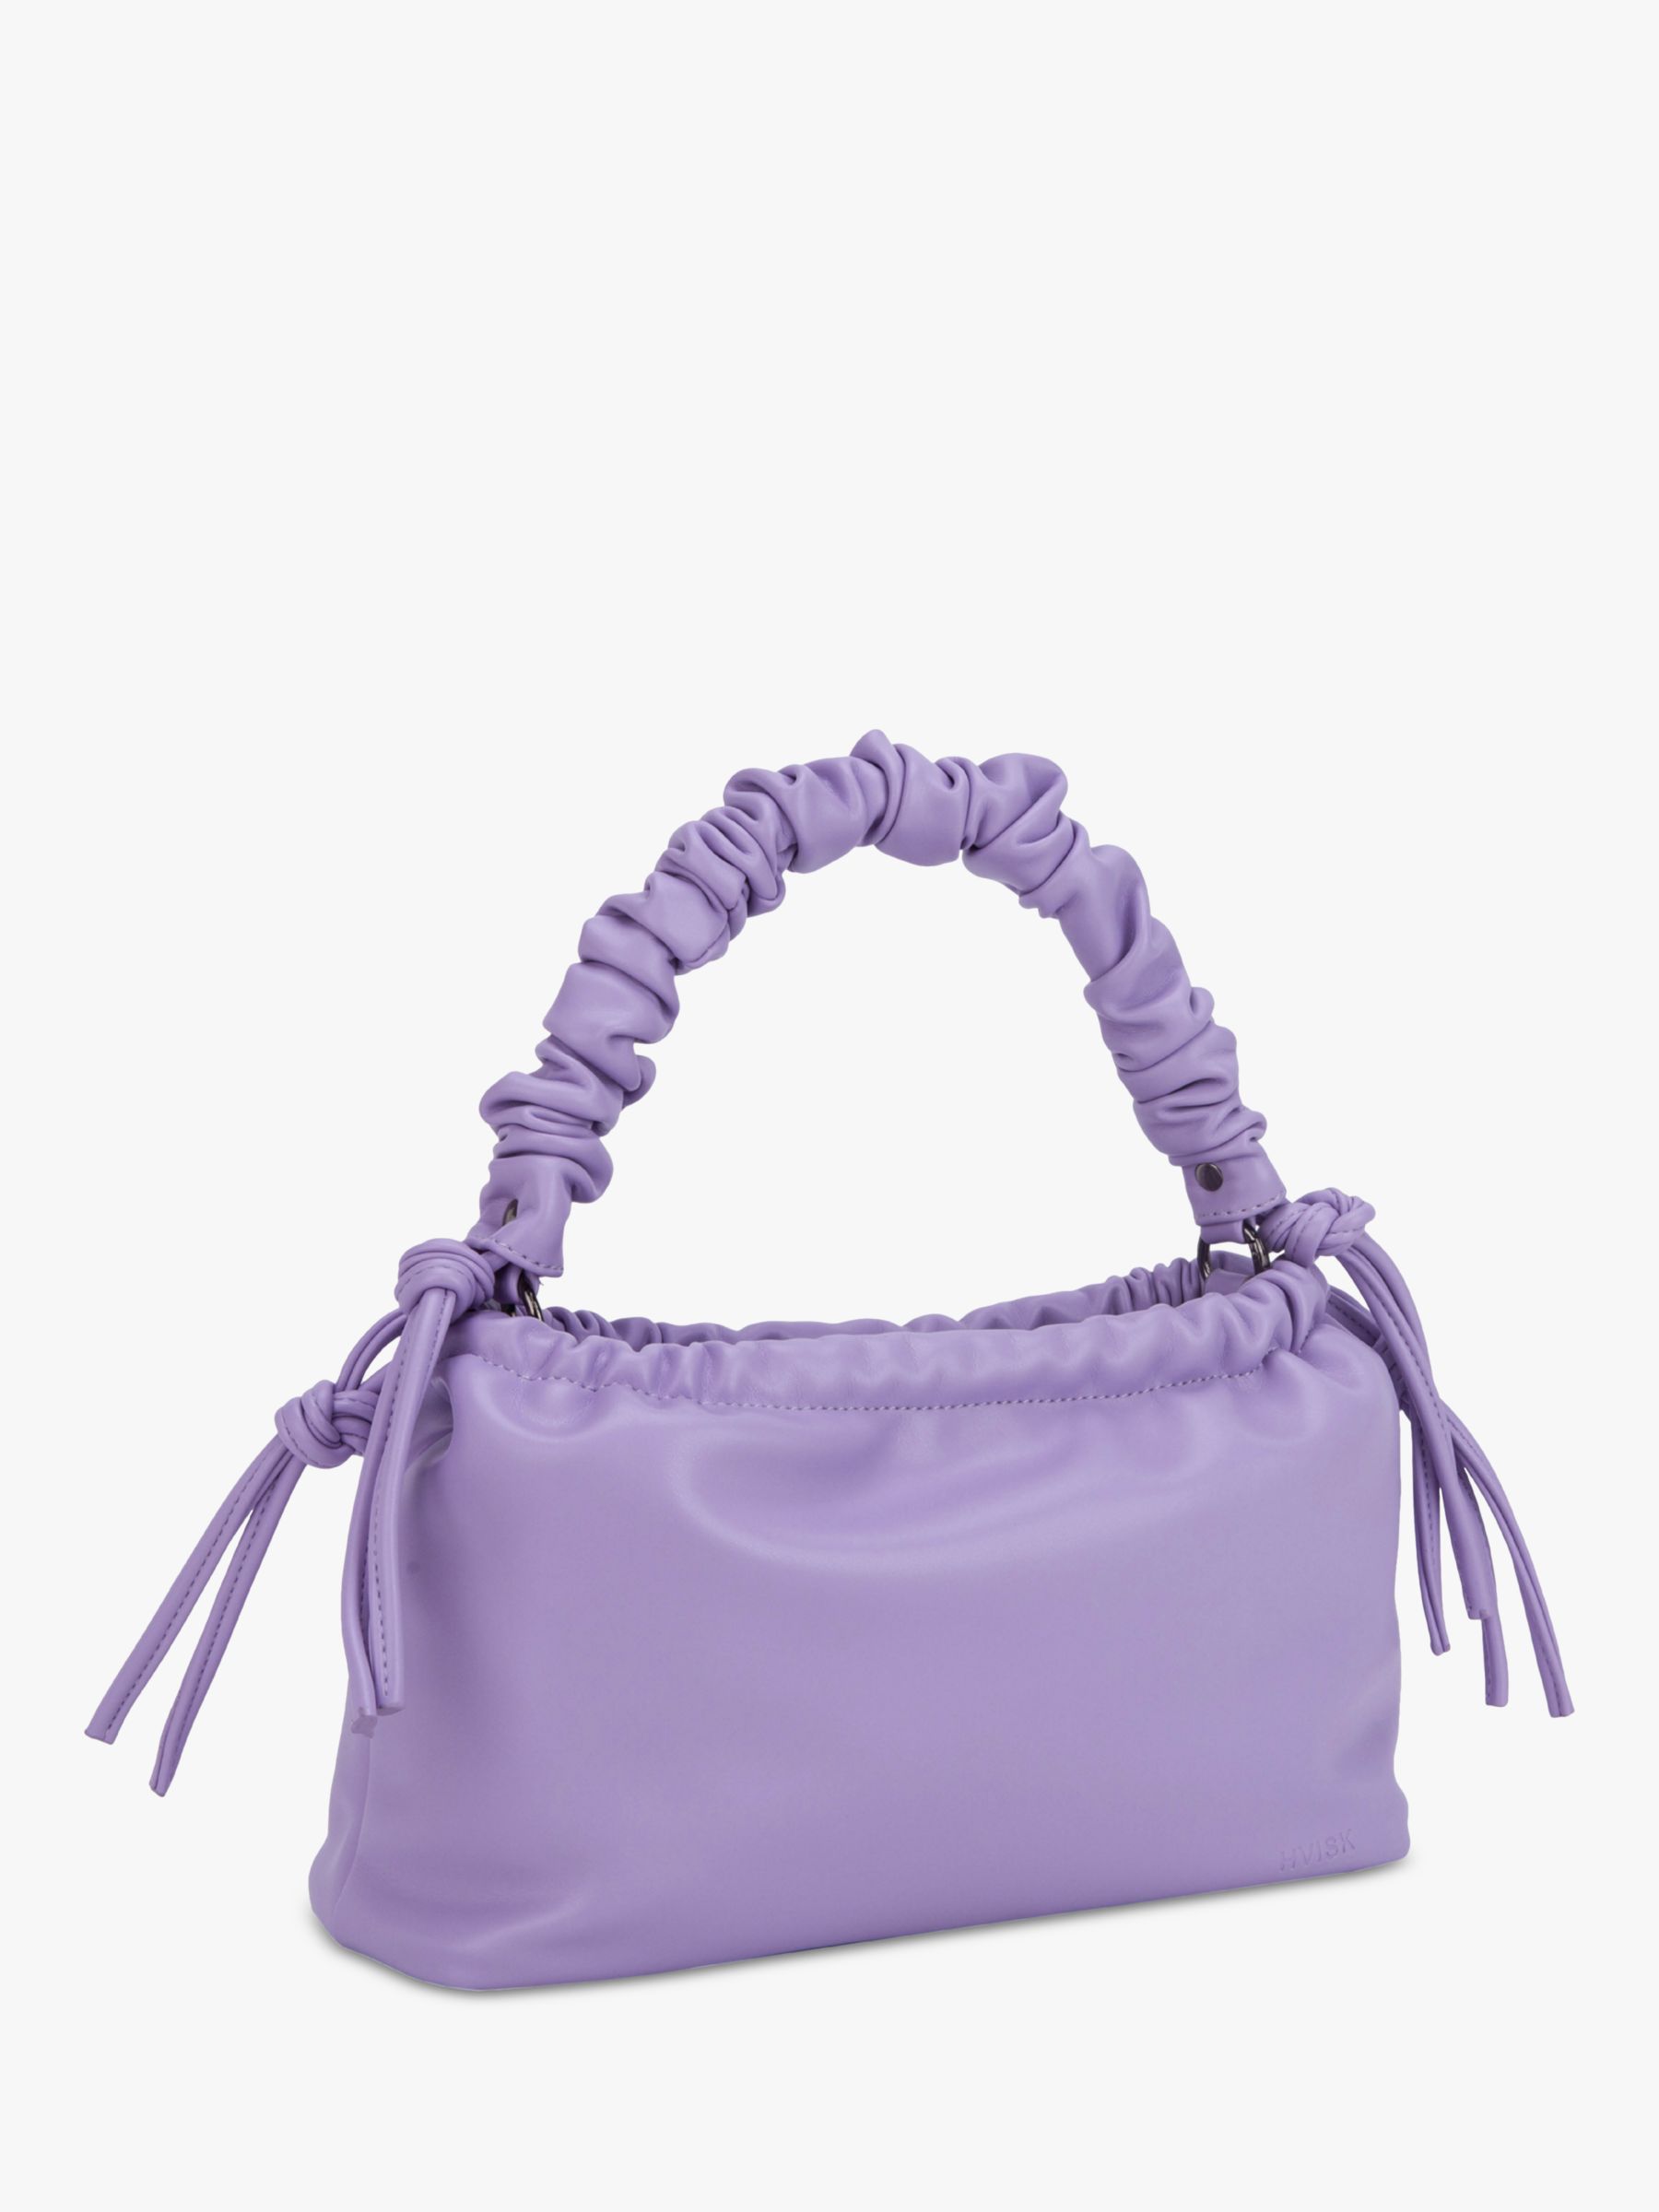 Buy HVISK Arcadia Grab Handle Bag, Soft Lavender Online at johnlewis.com